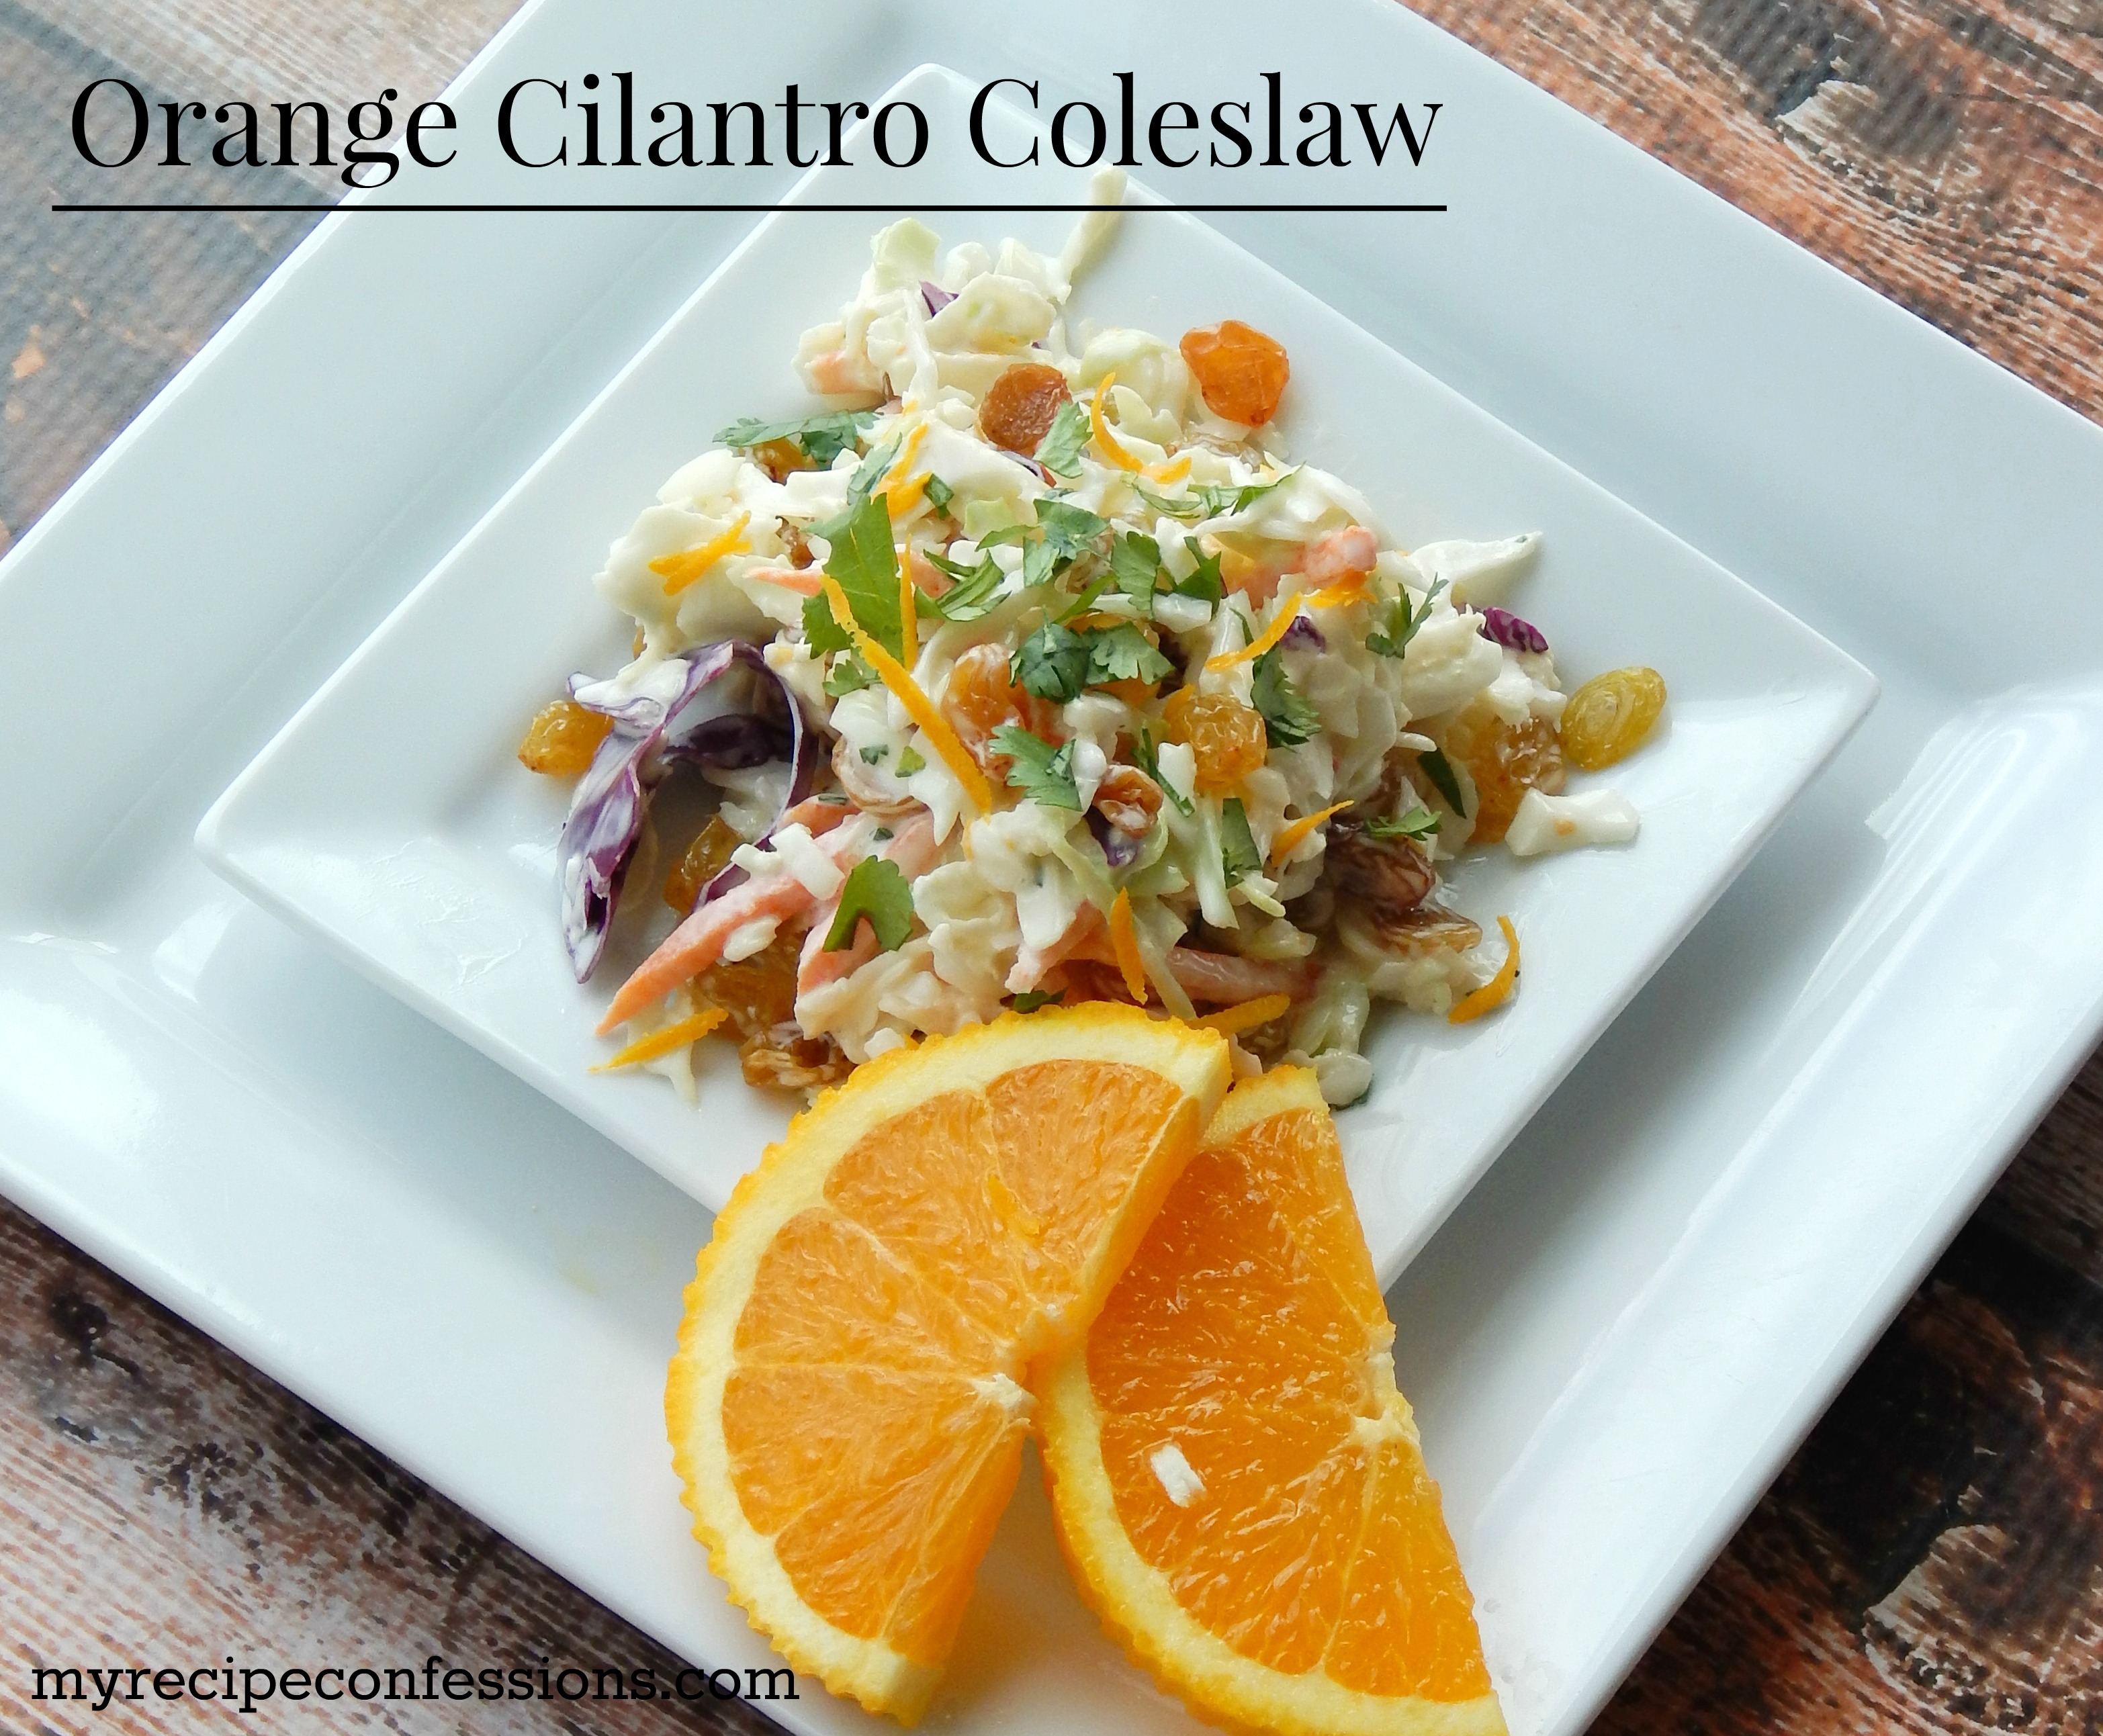 Orange Cilantro Coleslaw